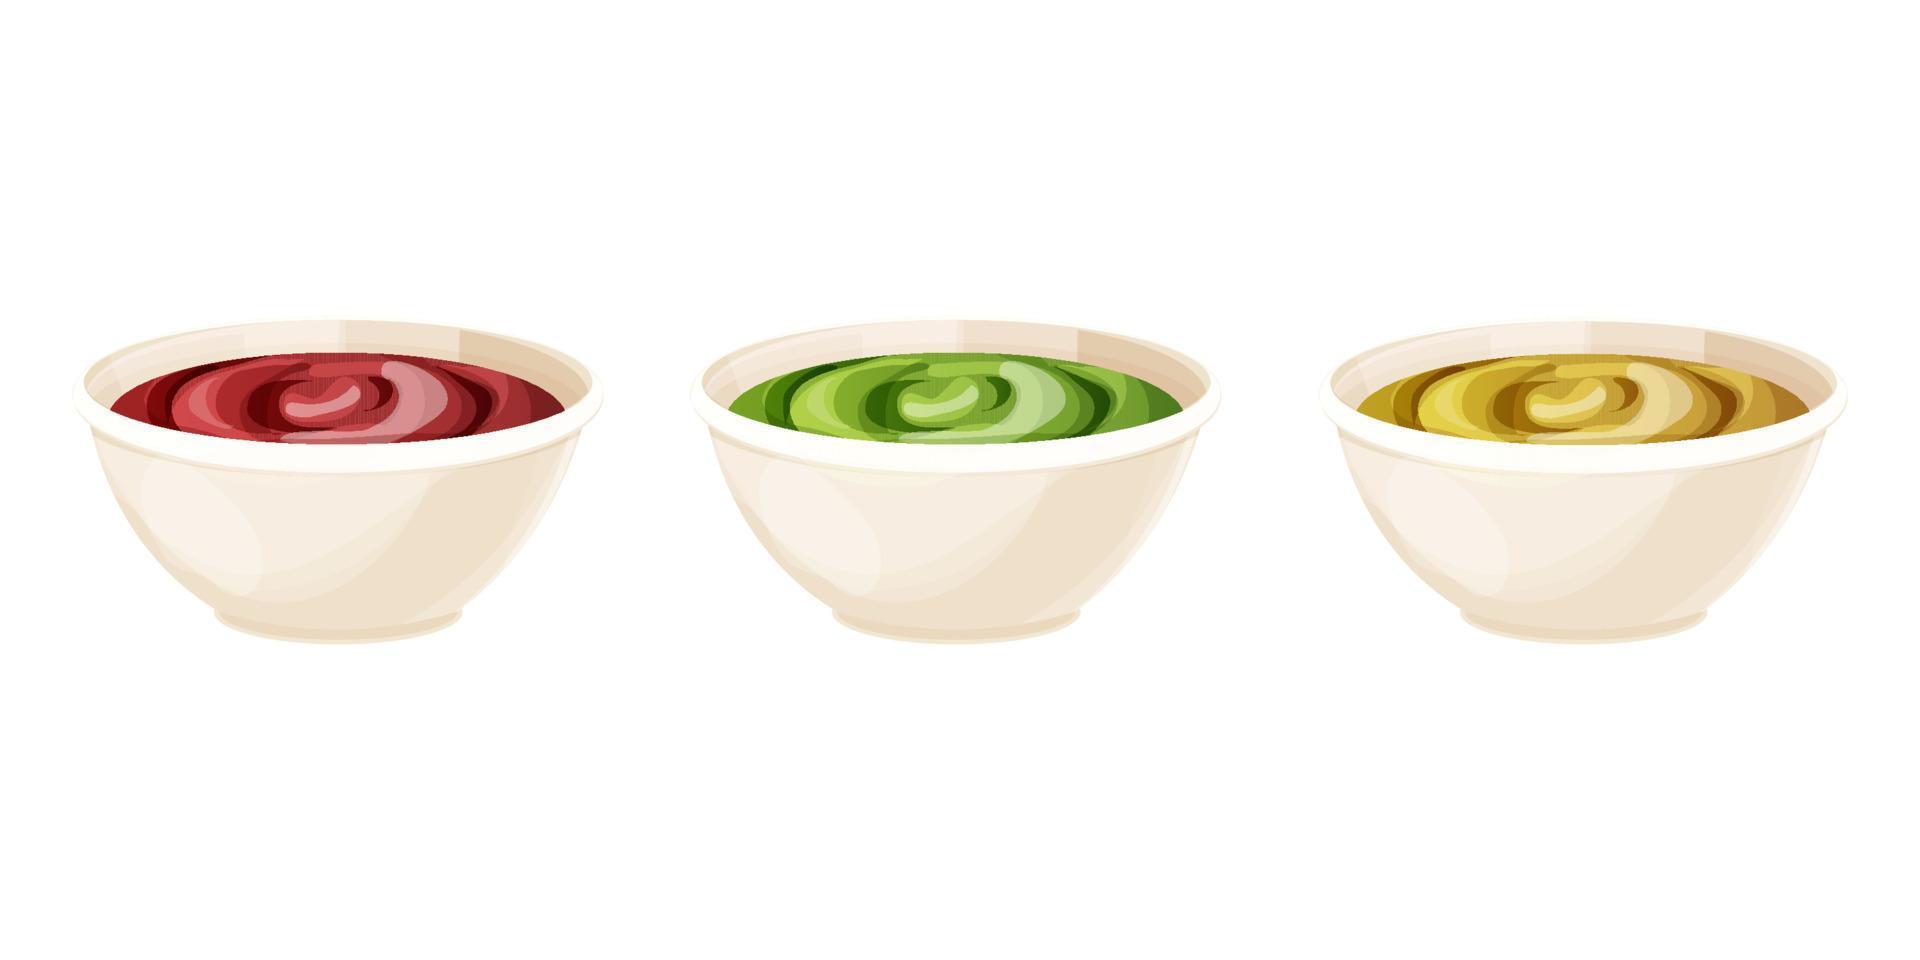 définir un bol en céramique avec des sauces dip en style cartoon, tomate, moutarde, guacamole isolé sur fond blanc. illustration vectorielle vecteur